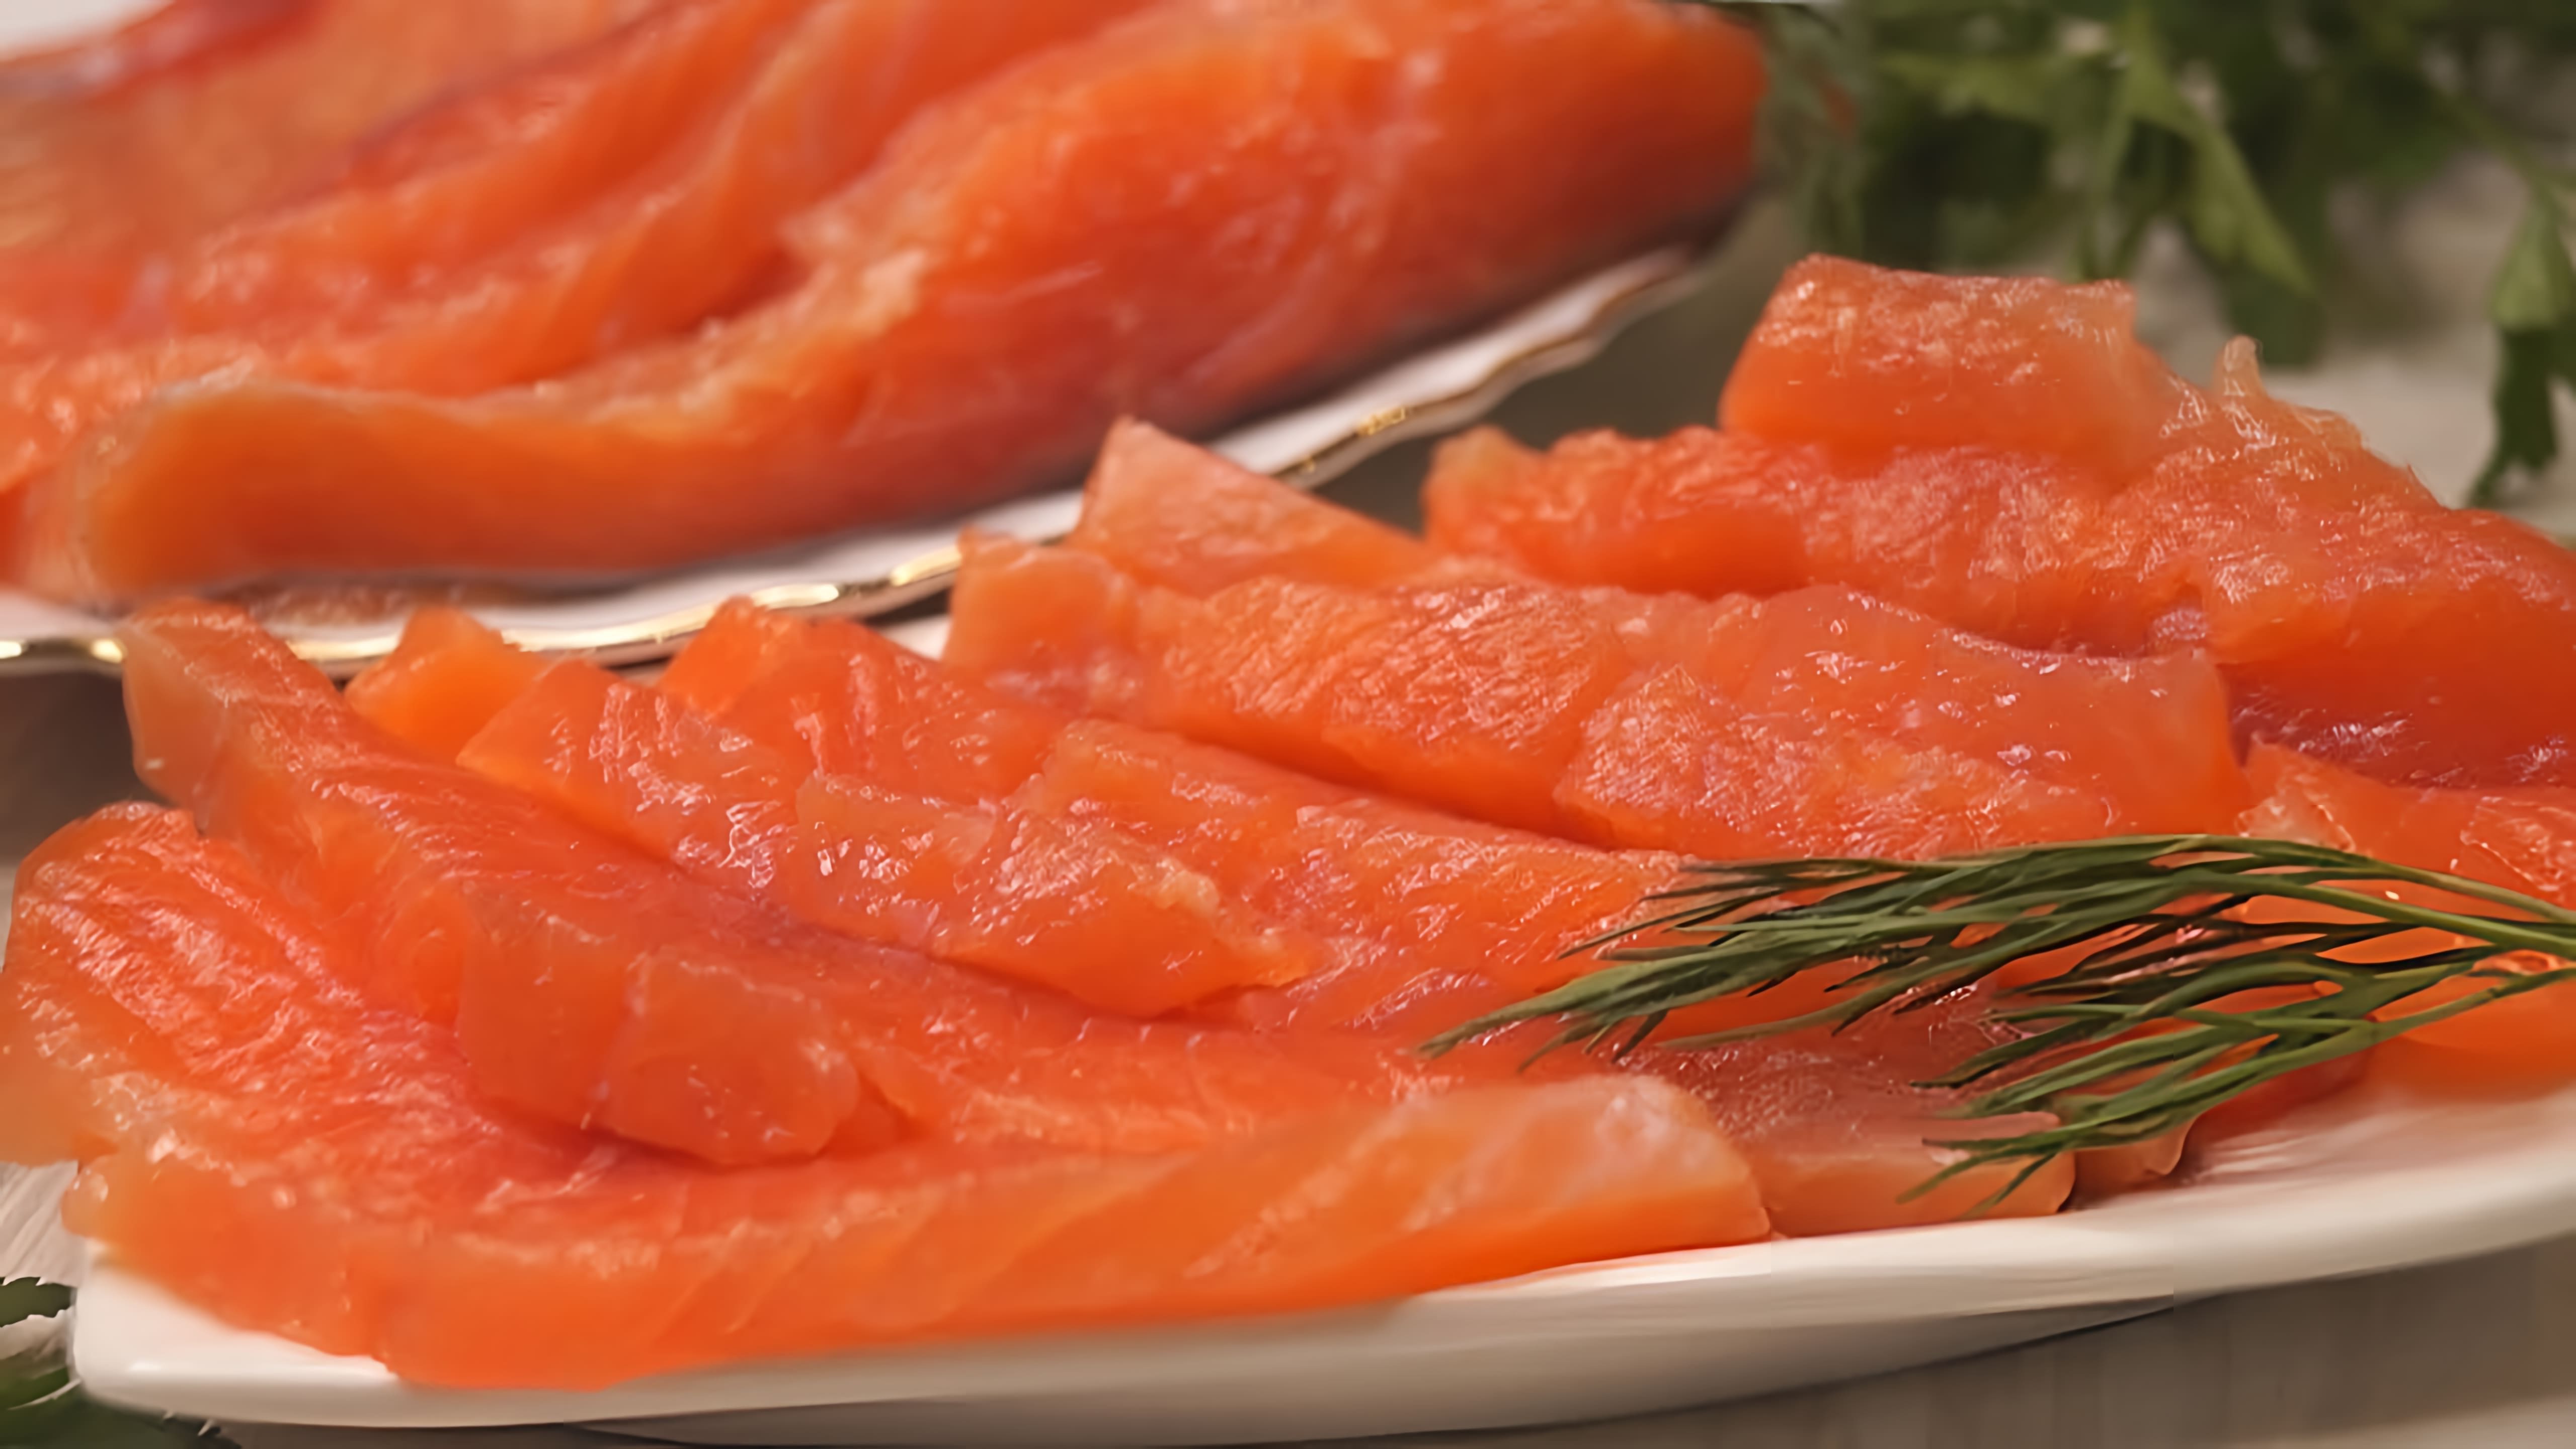 Видео рецепт для маринования красной рыбы в легком рассоле, который описывается как простой, но вкусный способ